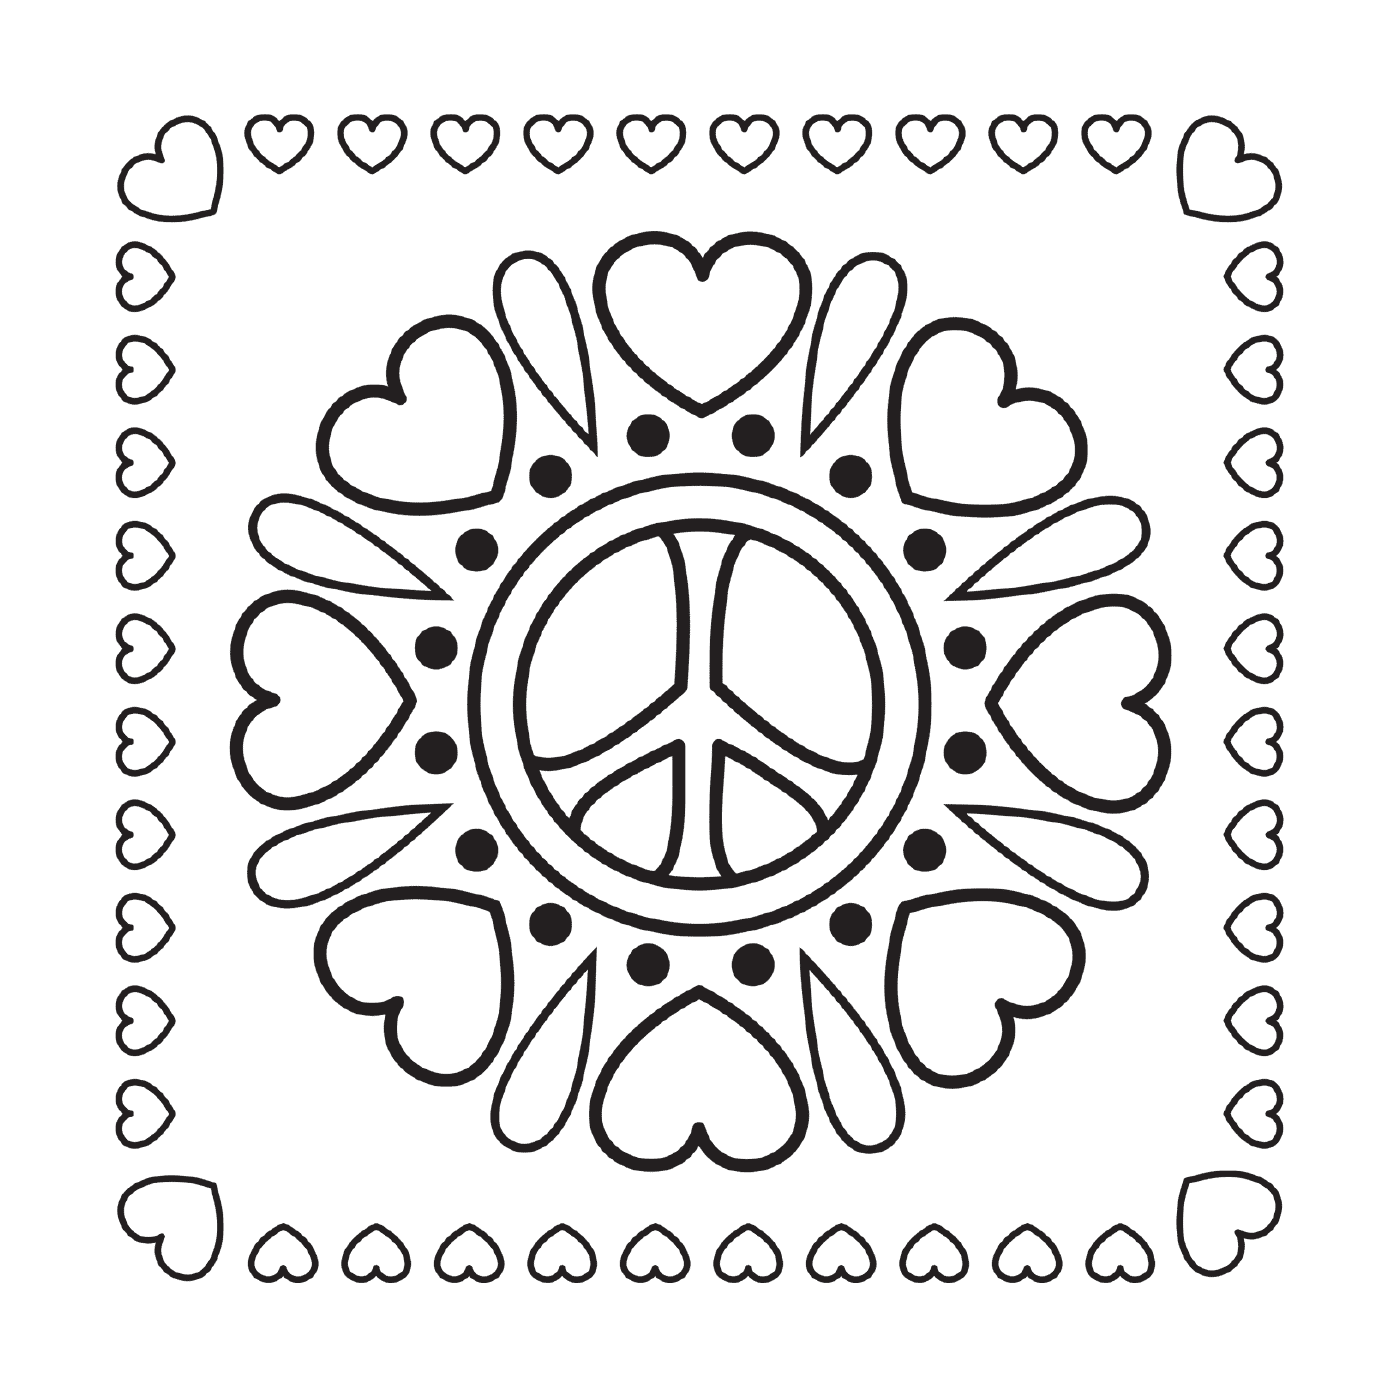  Mandala de paz con corazones 